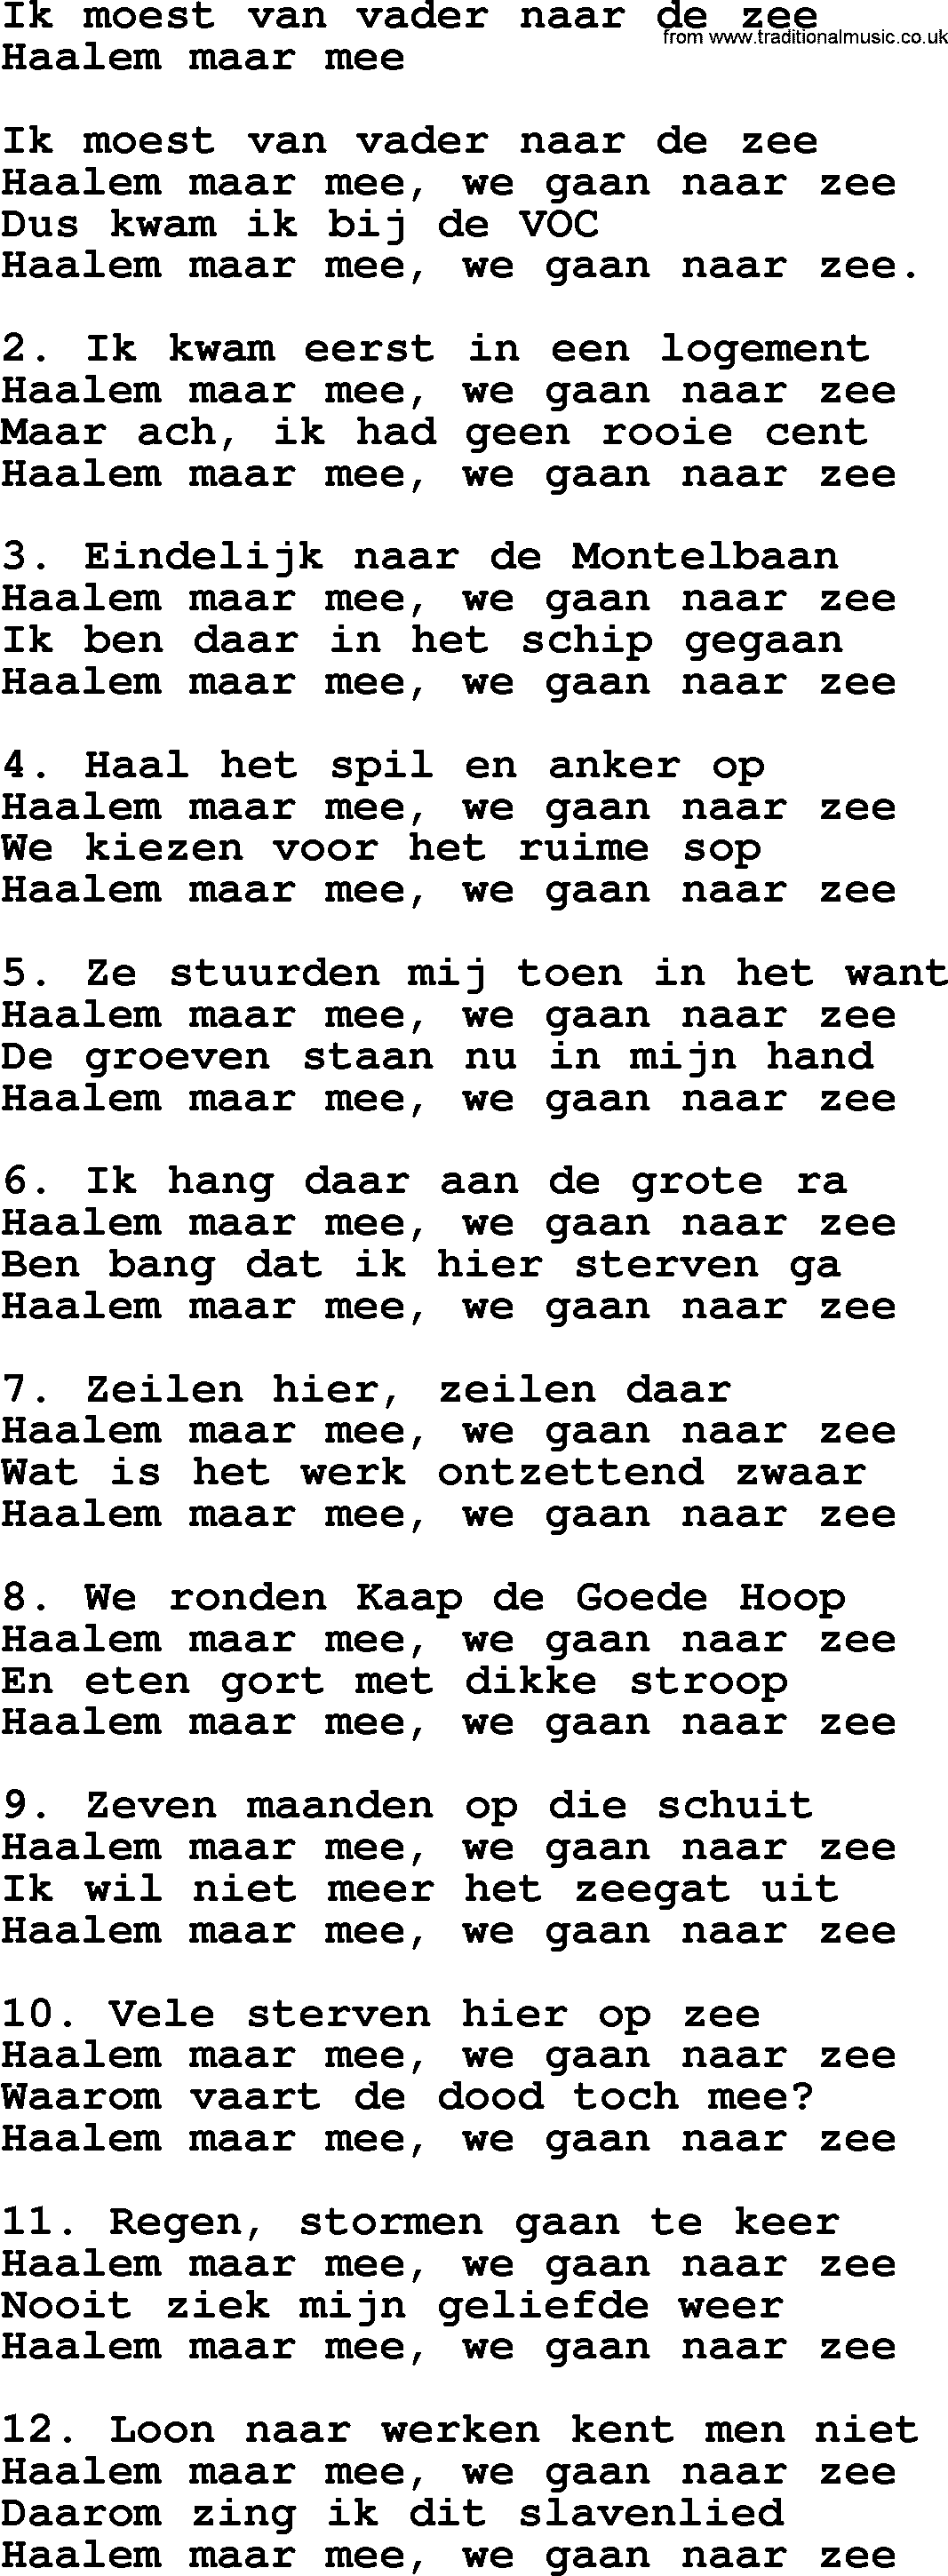 Sea Song or Shantie: Ik Moest Van Vader Naar De Zee, lyrics